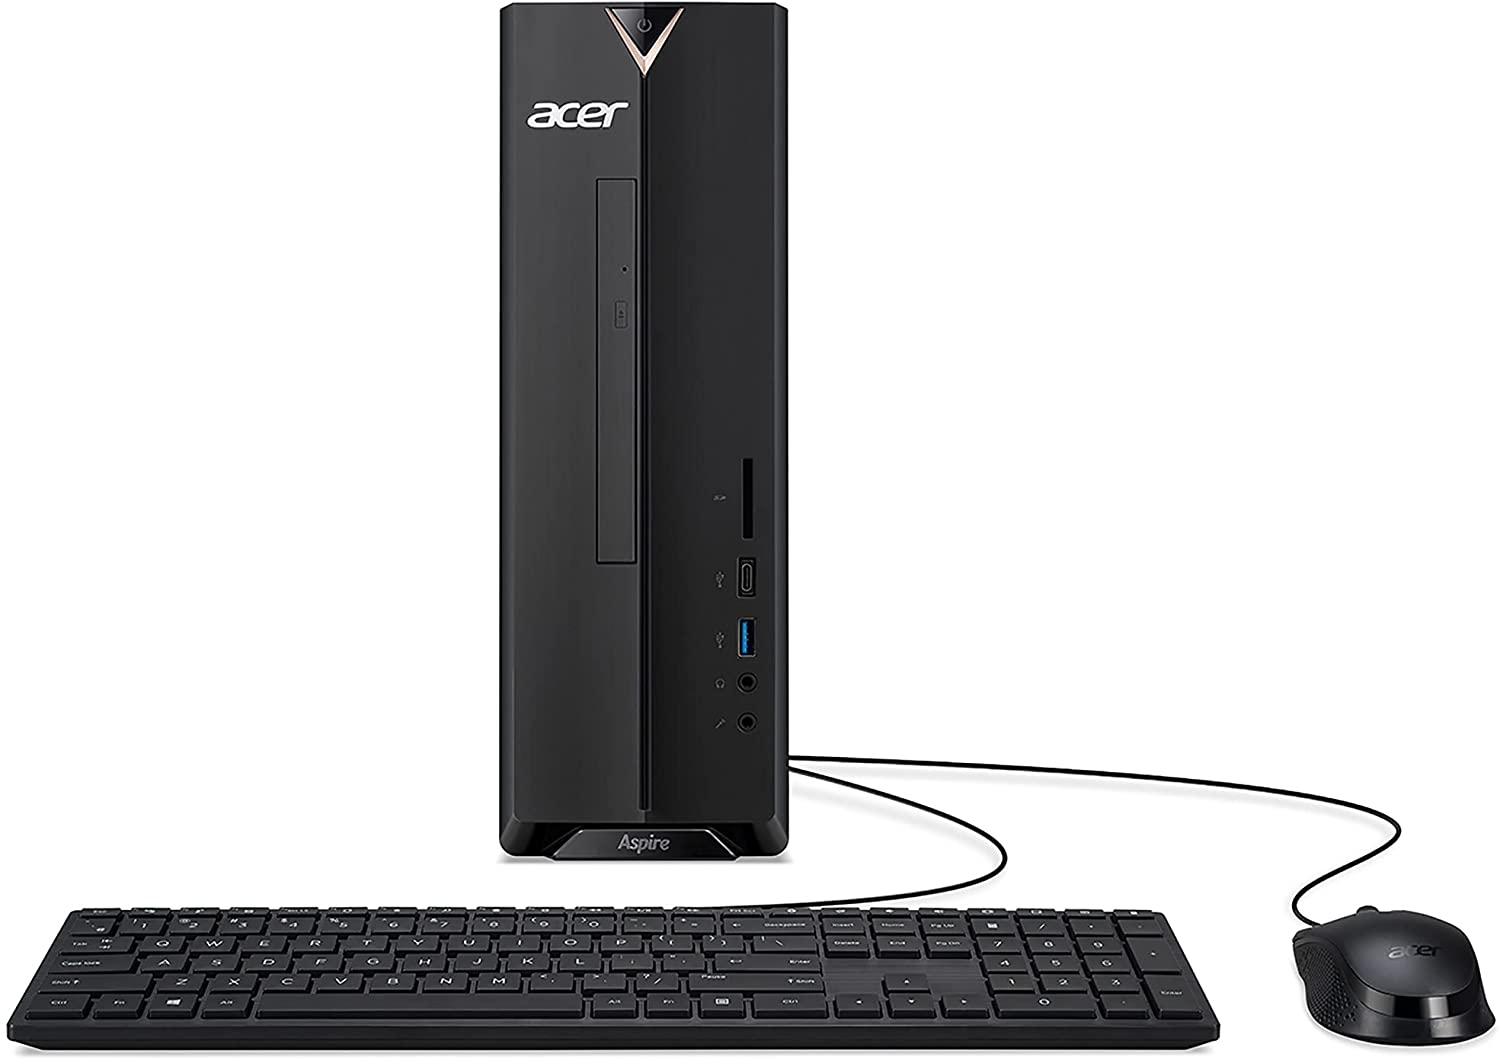 Acer Aspire XC-895